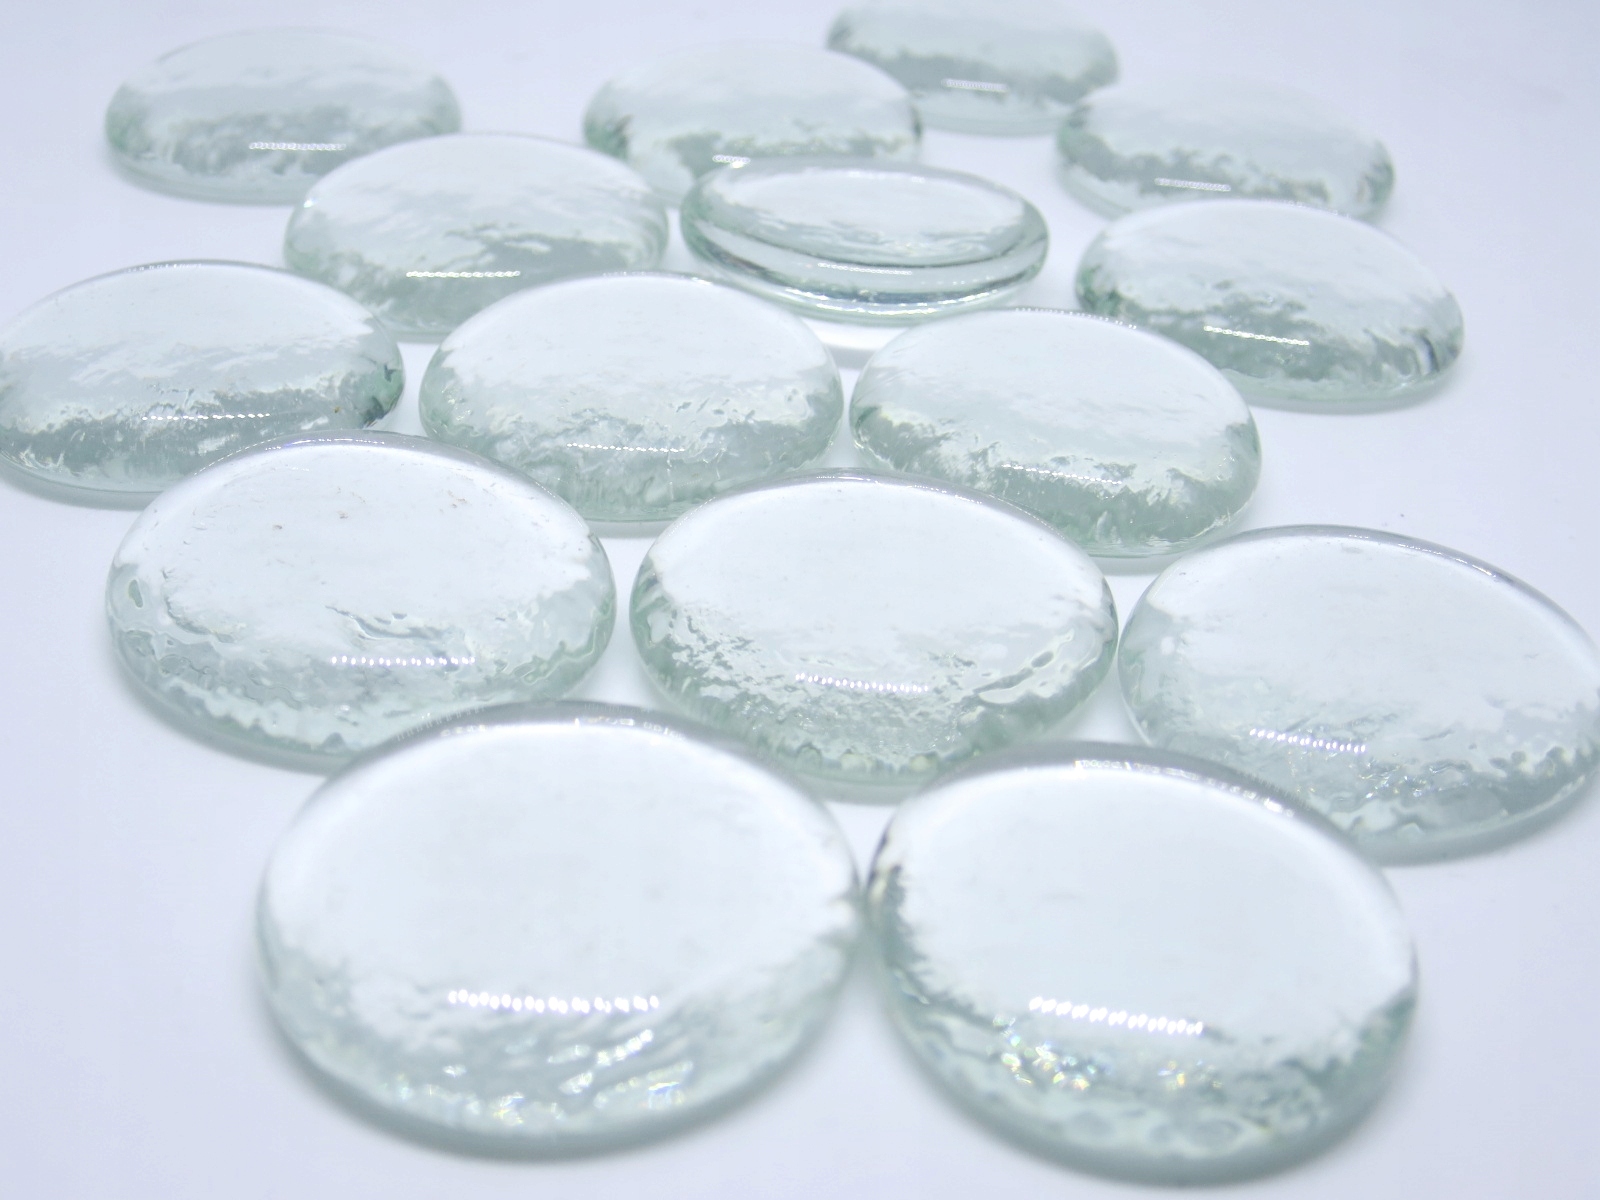 Stone fi. Стеклянные камни бесцветные. Таблетки в стекле. Таблетки прозрачные шарики. Прозрачные камни для рукоделия.